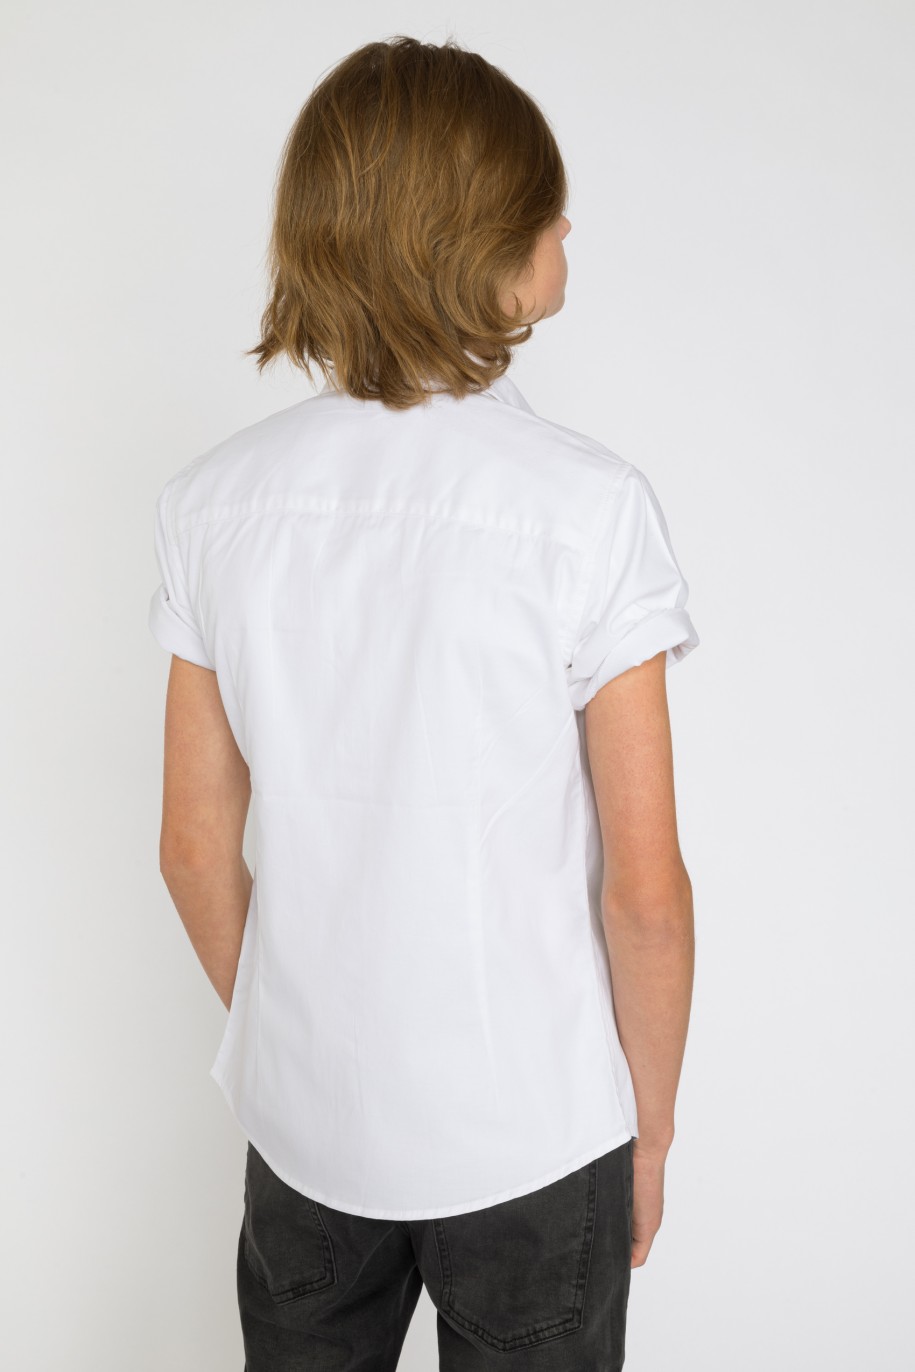 Biała koszula z krótkim rękawem dla chłopaka - 33850